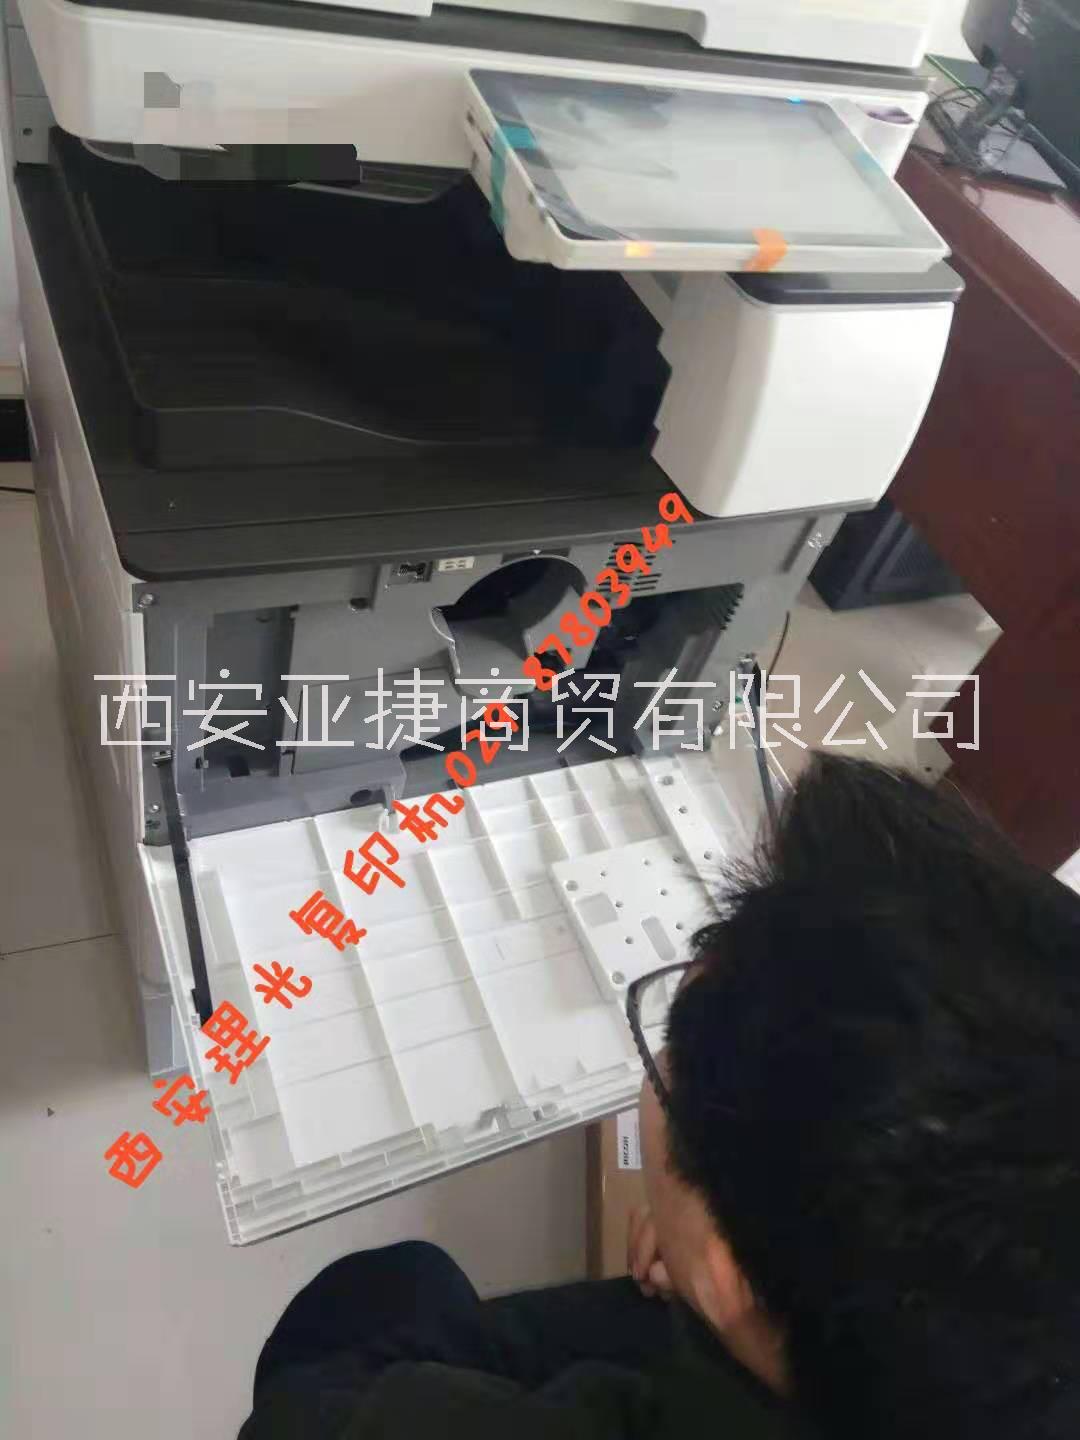 理光复印机C2011SP特价销售西安 理光复印机C2011SP特价销售